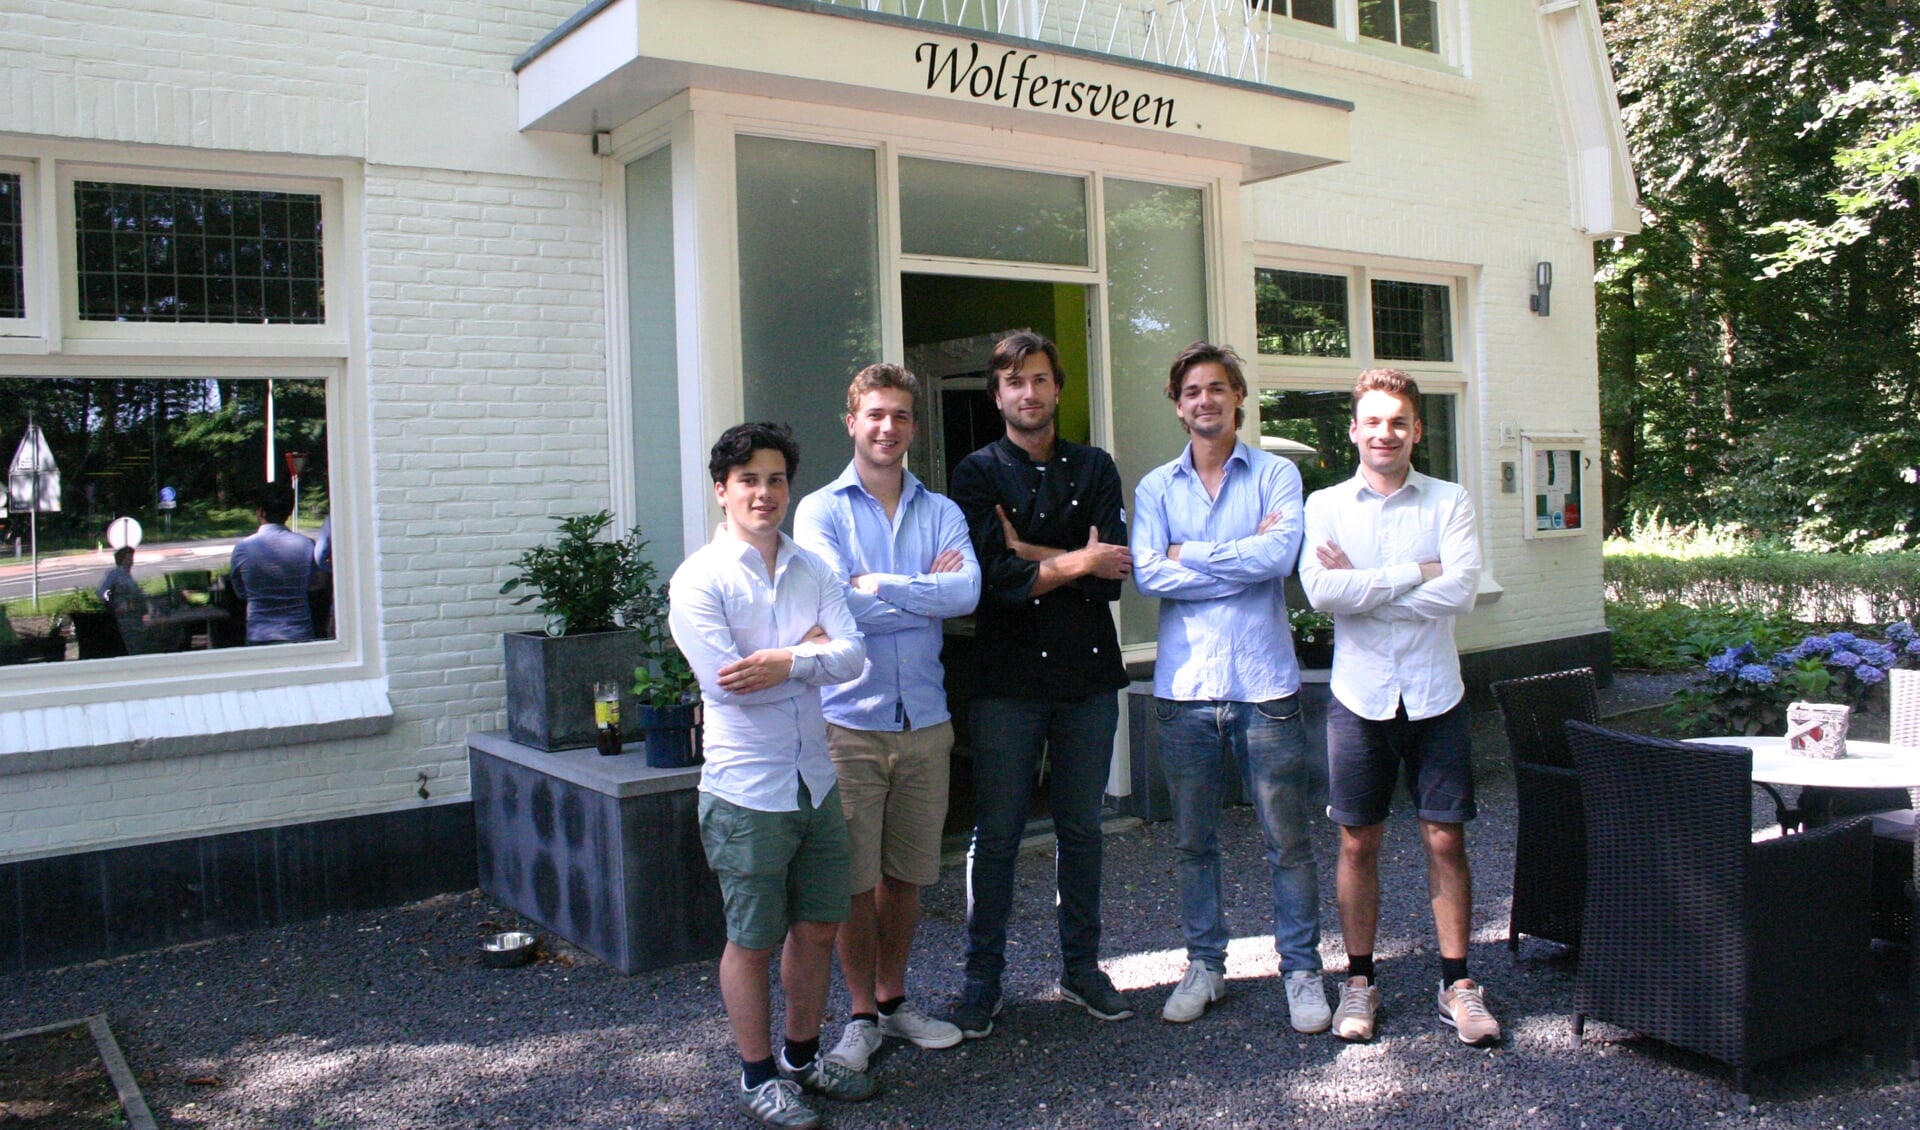 Het team van pop-up restaurant 't Wolfersveen (Gijs ontbreekt). Foto: Jan Knoef